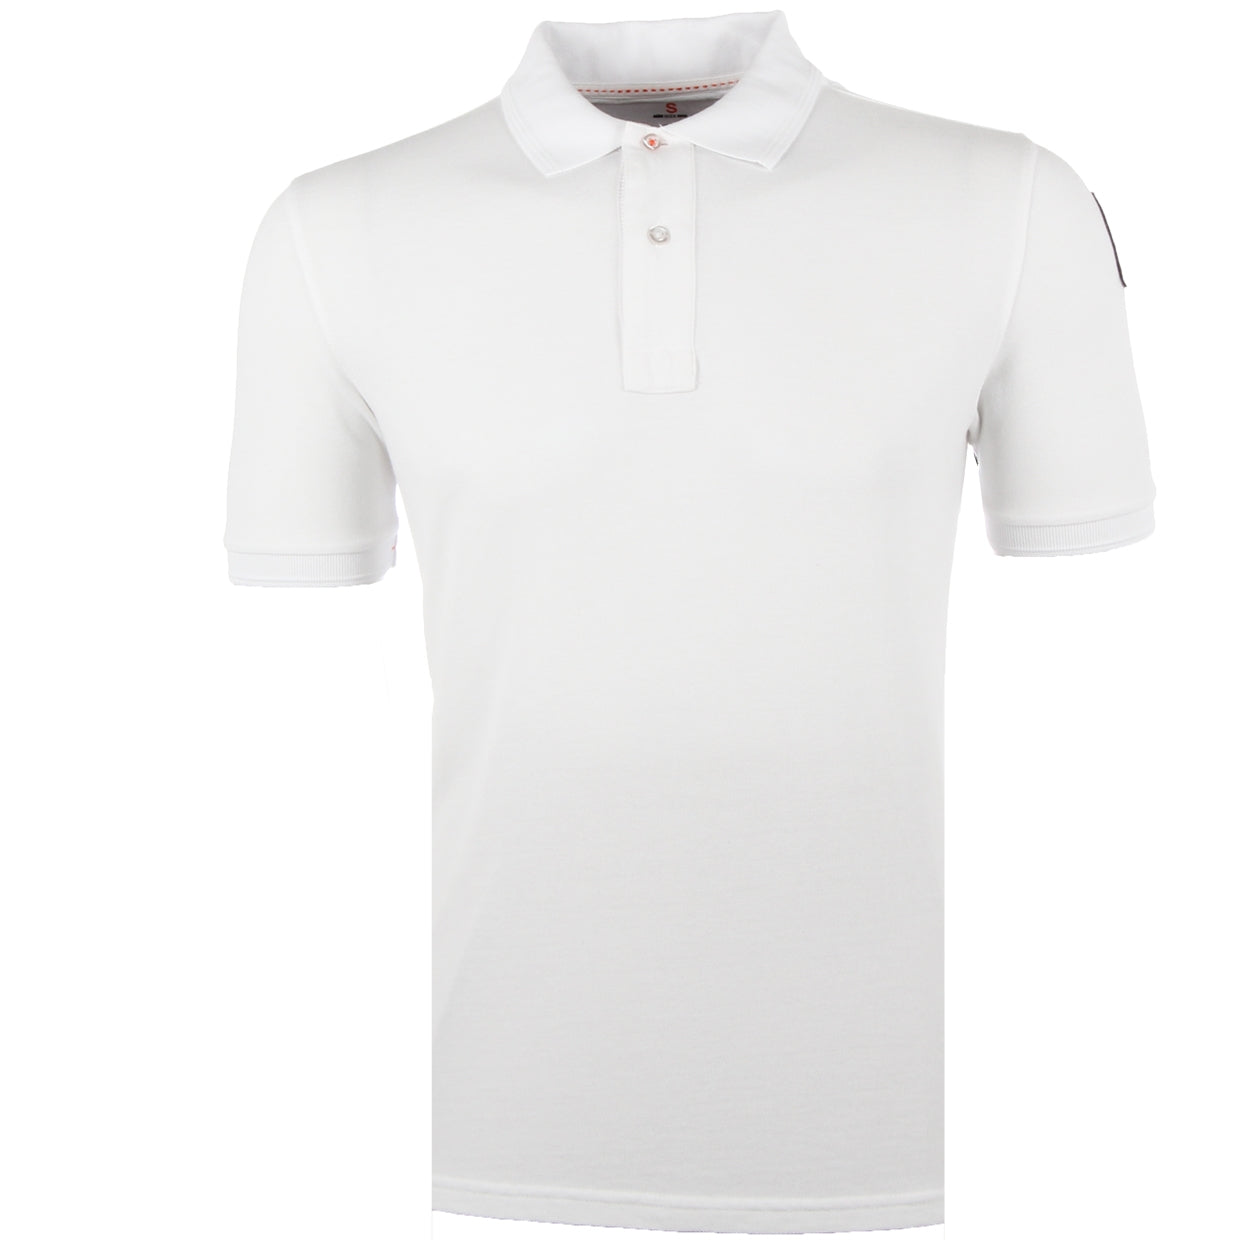 ParaJumper White Patch Logo Polo Shirt - Retro Designer Wear